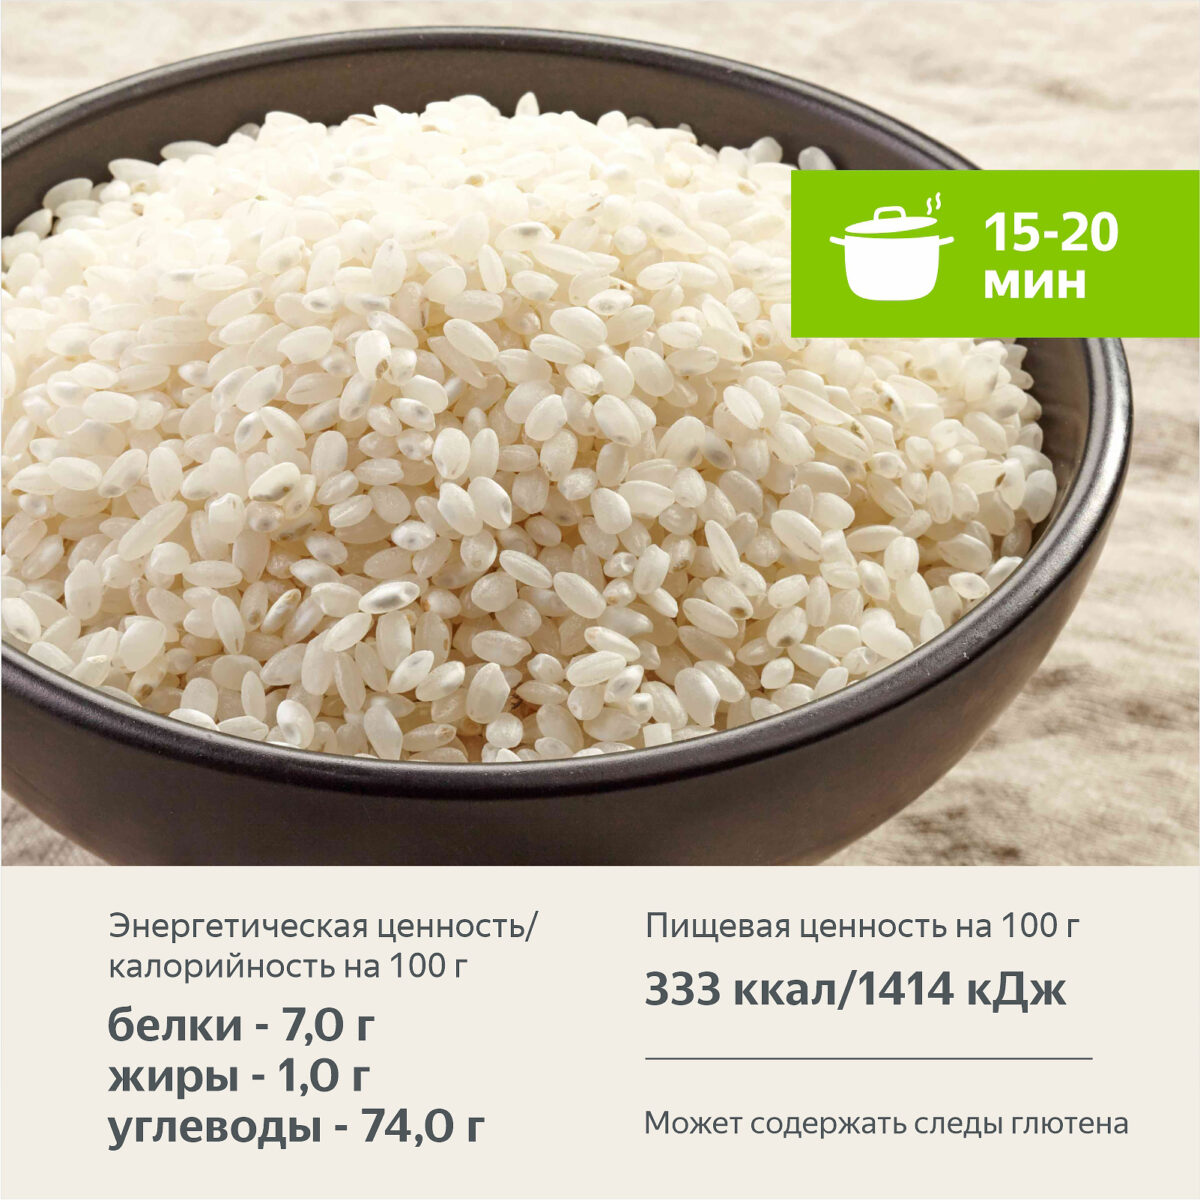 Рис круглозерный 800 гр. Алтайские крупы - Интернет-магазин